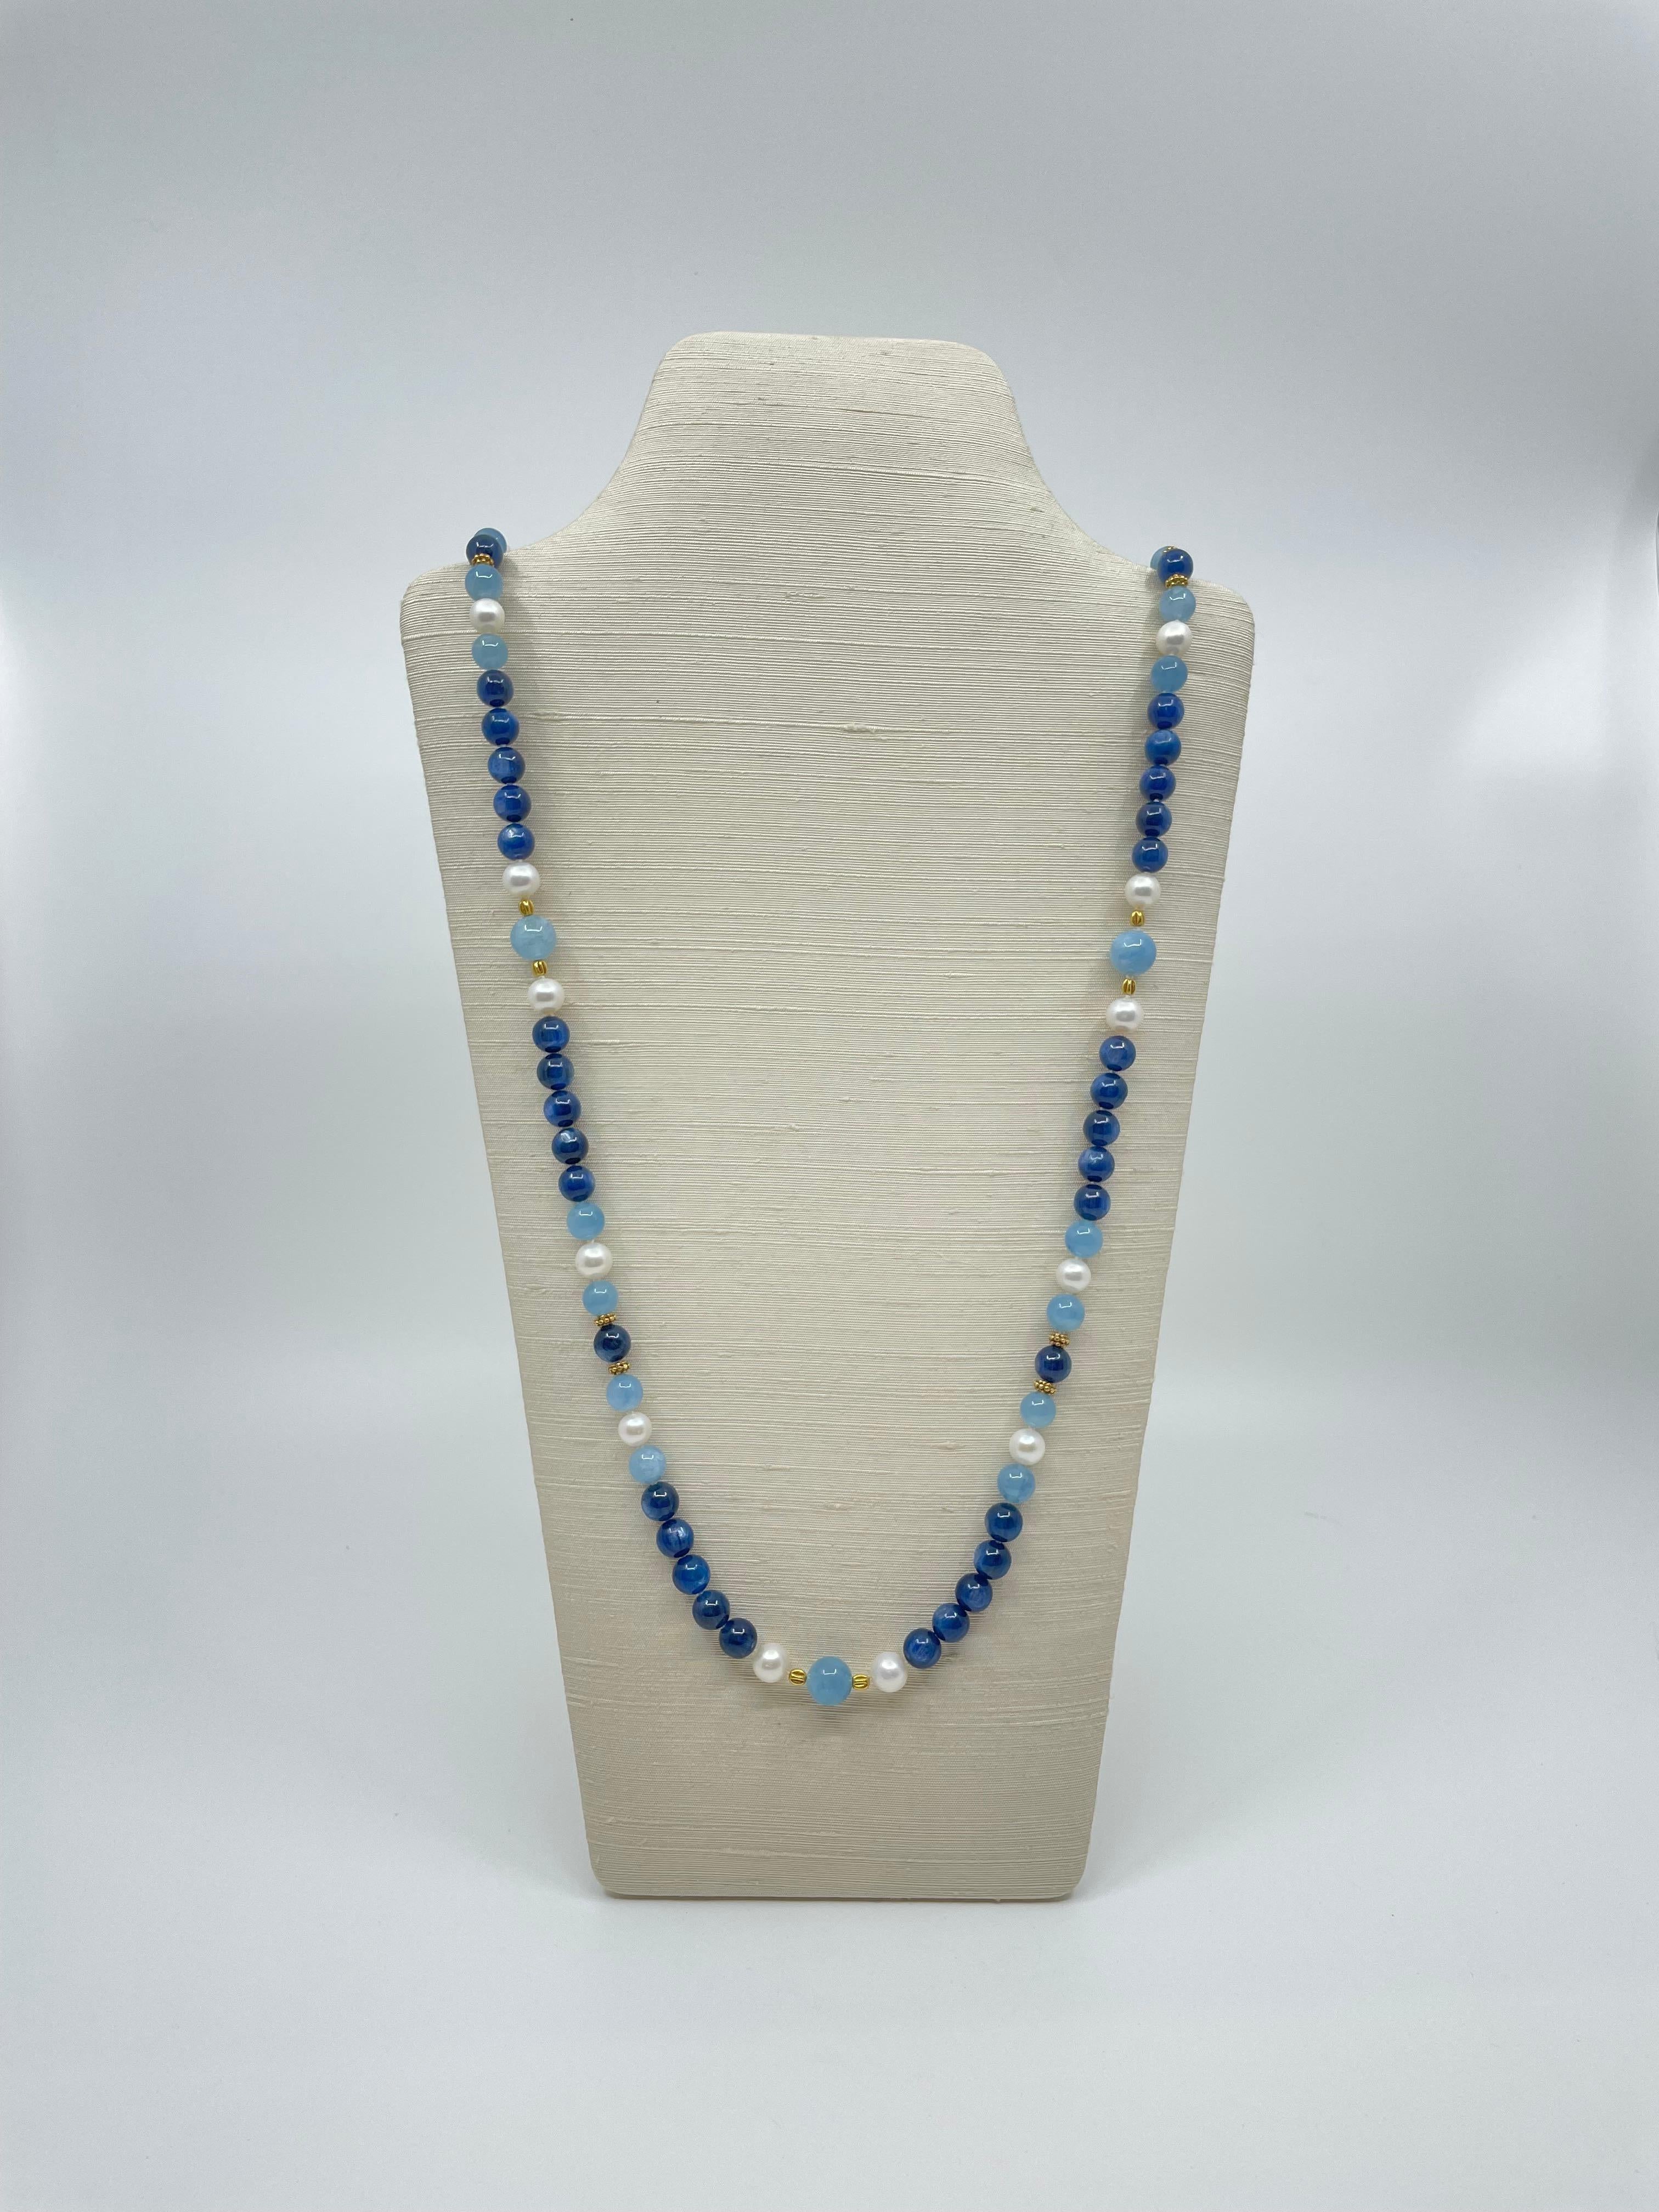 Eine handgefertigte lange Halskette aus wunderschönen dunkelblauen Kyanitperlen, runden Aquamarinperlen und Süßwasserperlen, die durch 18-karätige Goldperlen voneinander getrennt sind, wird mit einem 18-karätigem Goldverschluss geschlossen. 
Das